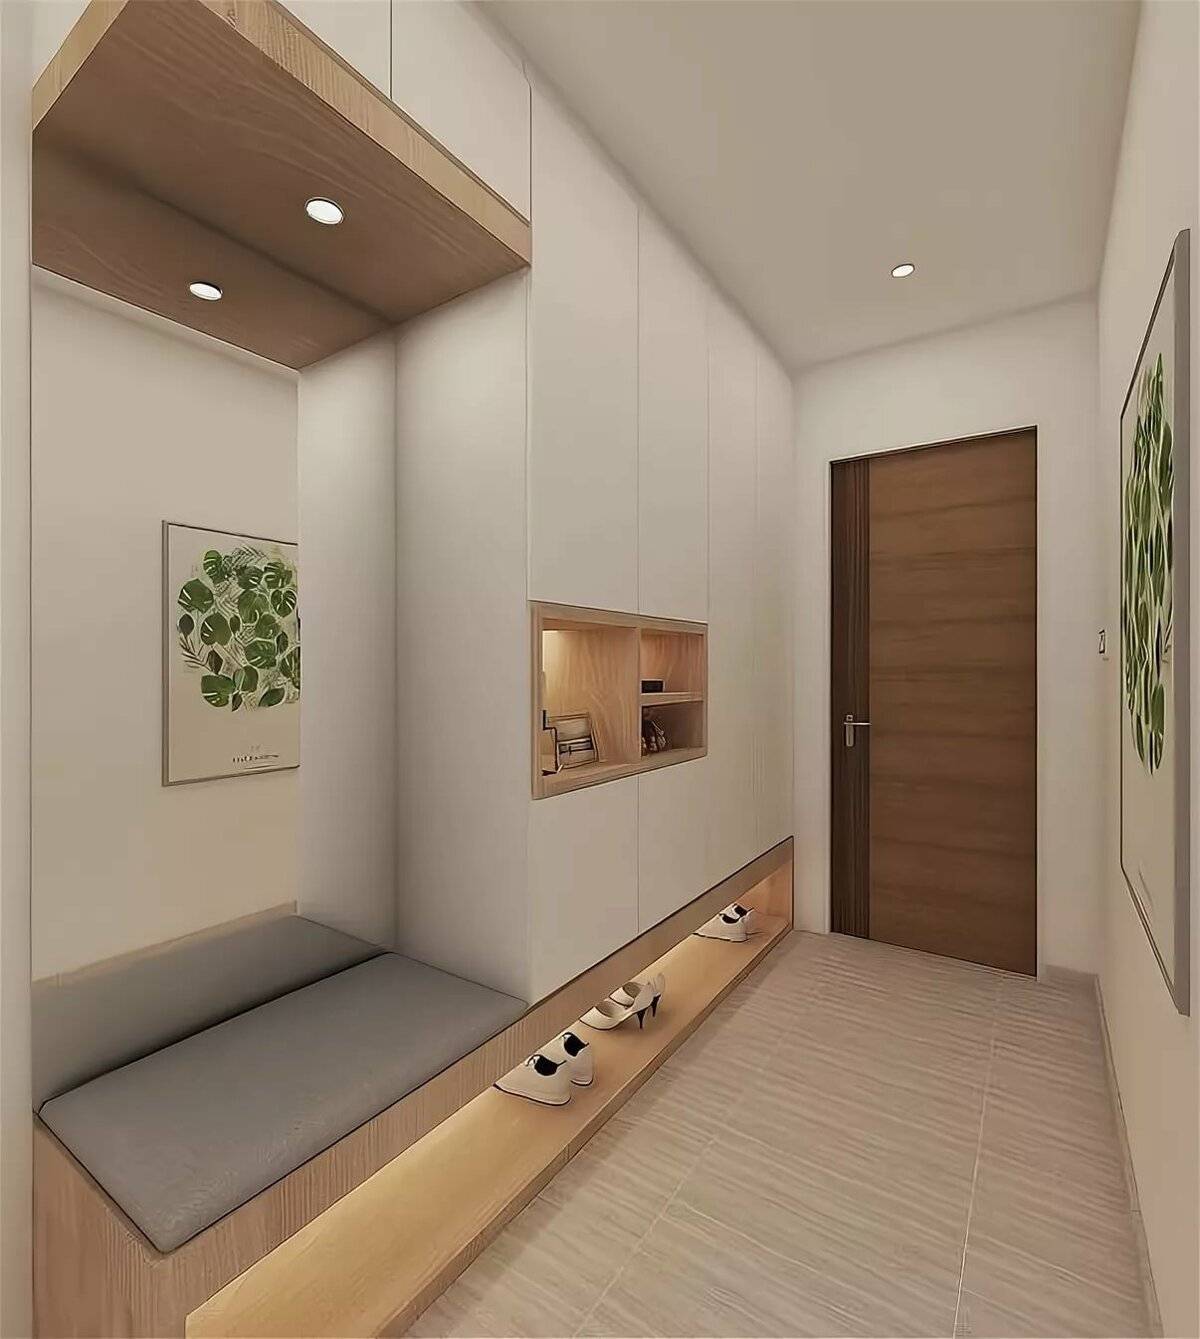 Дизайн узкого коридора в квартире: 5 лайфхаков по обустройству